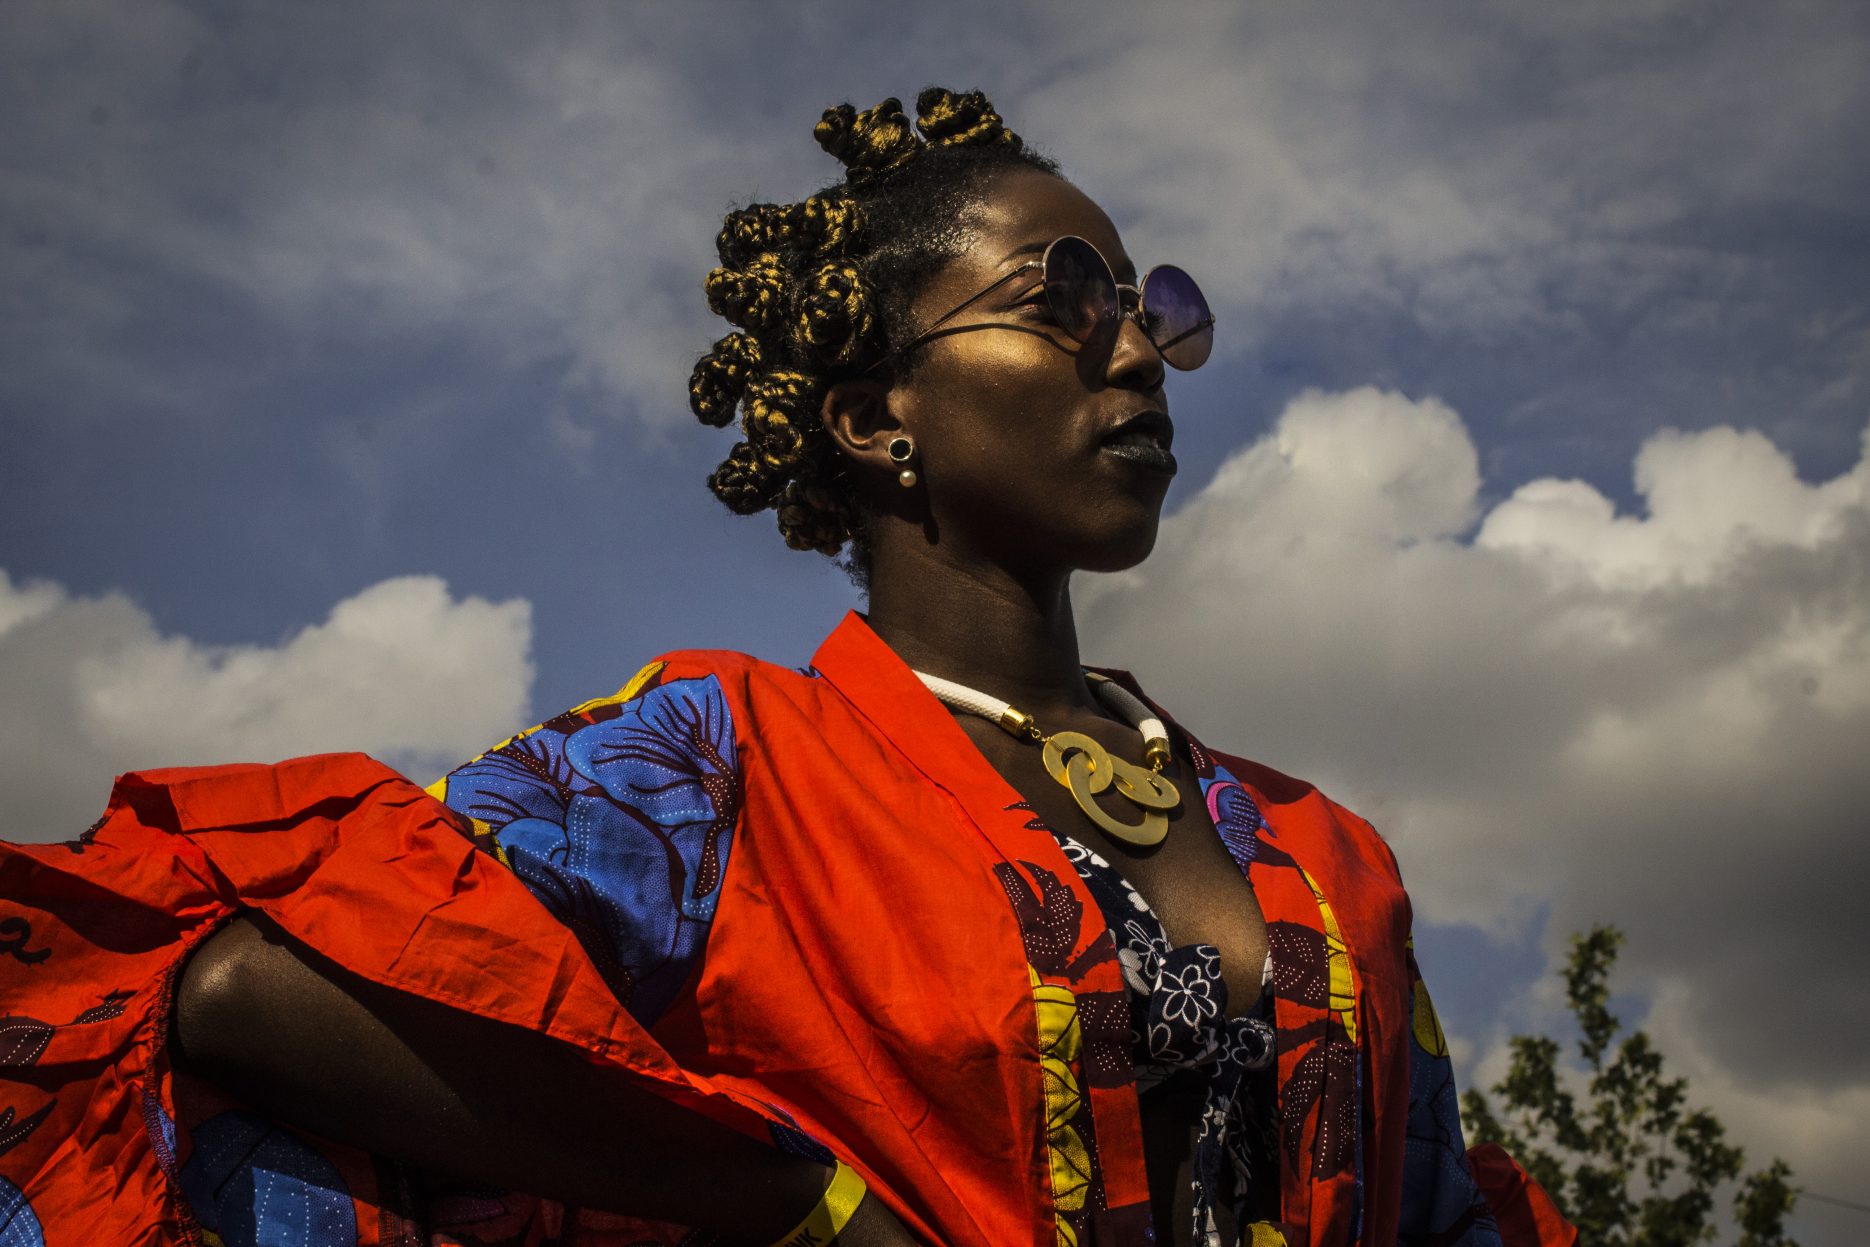 [UOL Tab] Ouviu falar em afropunk? A cena negra global e alternativa vem ao Brasil